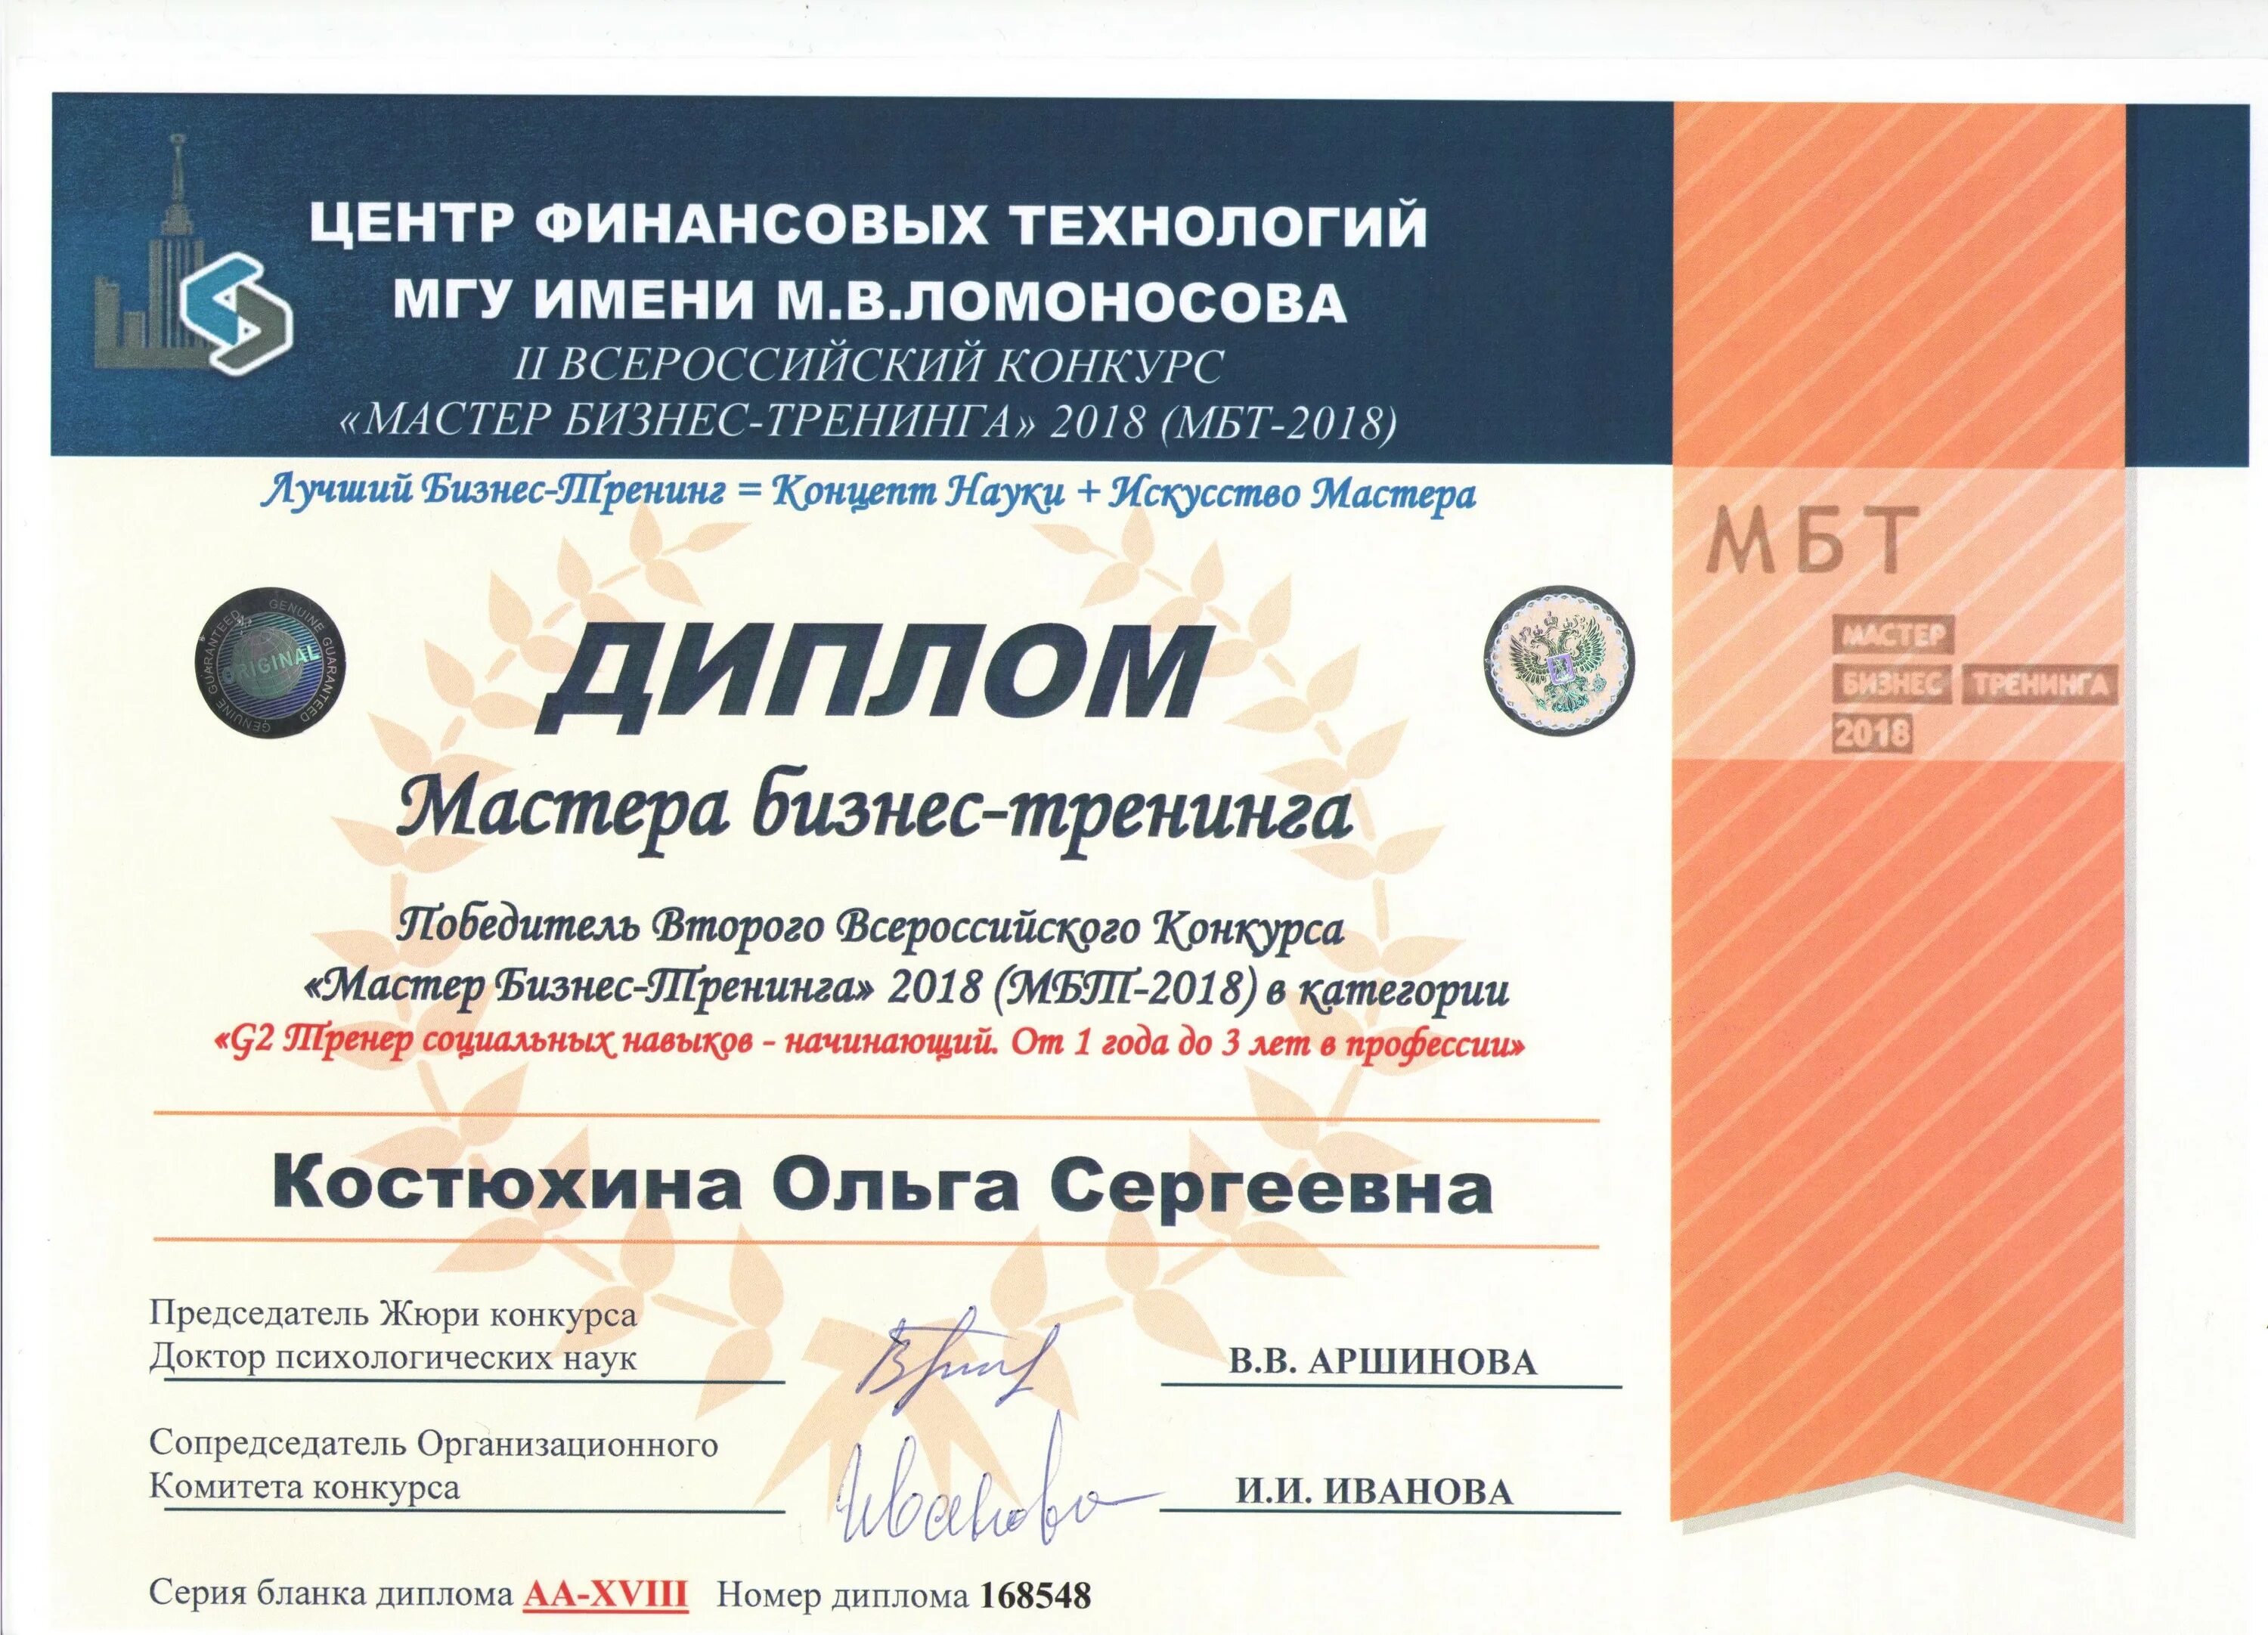 Купить аттестат в казани arena diplomnaya. Сертификат на бизнес тренинг. Сертификат бизнес тренера. Сертификат бизне стренер.